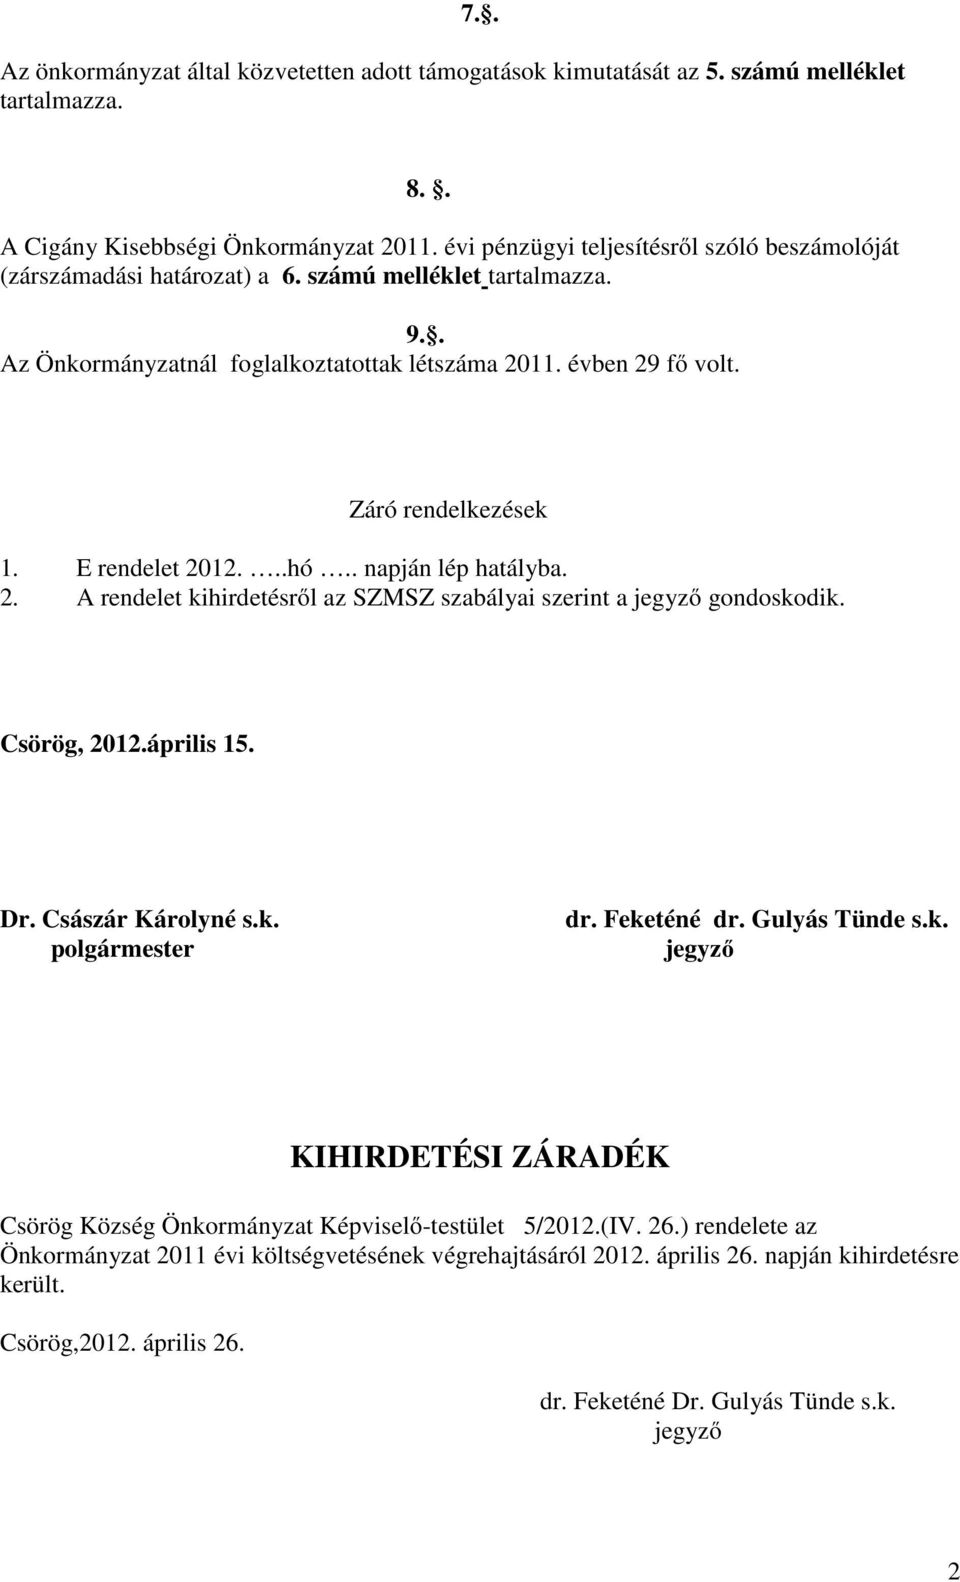 E rendelet 2012...hó.. napján lép hatályba. 2. A rendelet kihirdetésről az SZMSZ szabályai szerint a jegyző gondoskodik. Csörög, 2012.április 15. Dr. Császár Károlyné s.k. polgármester dr.